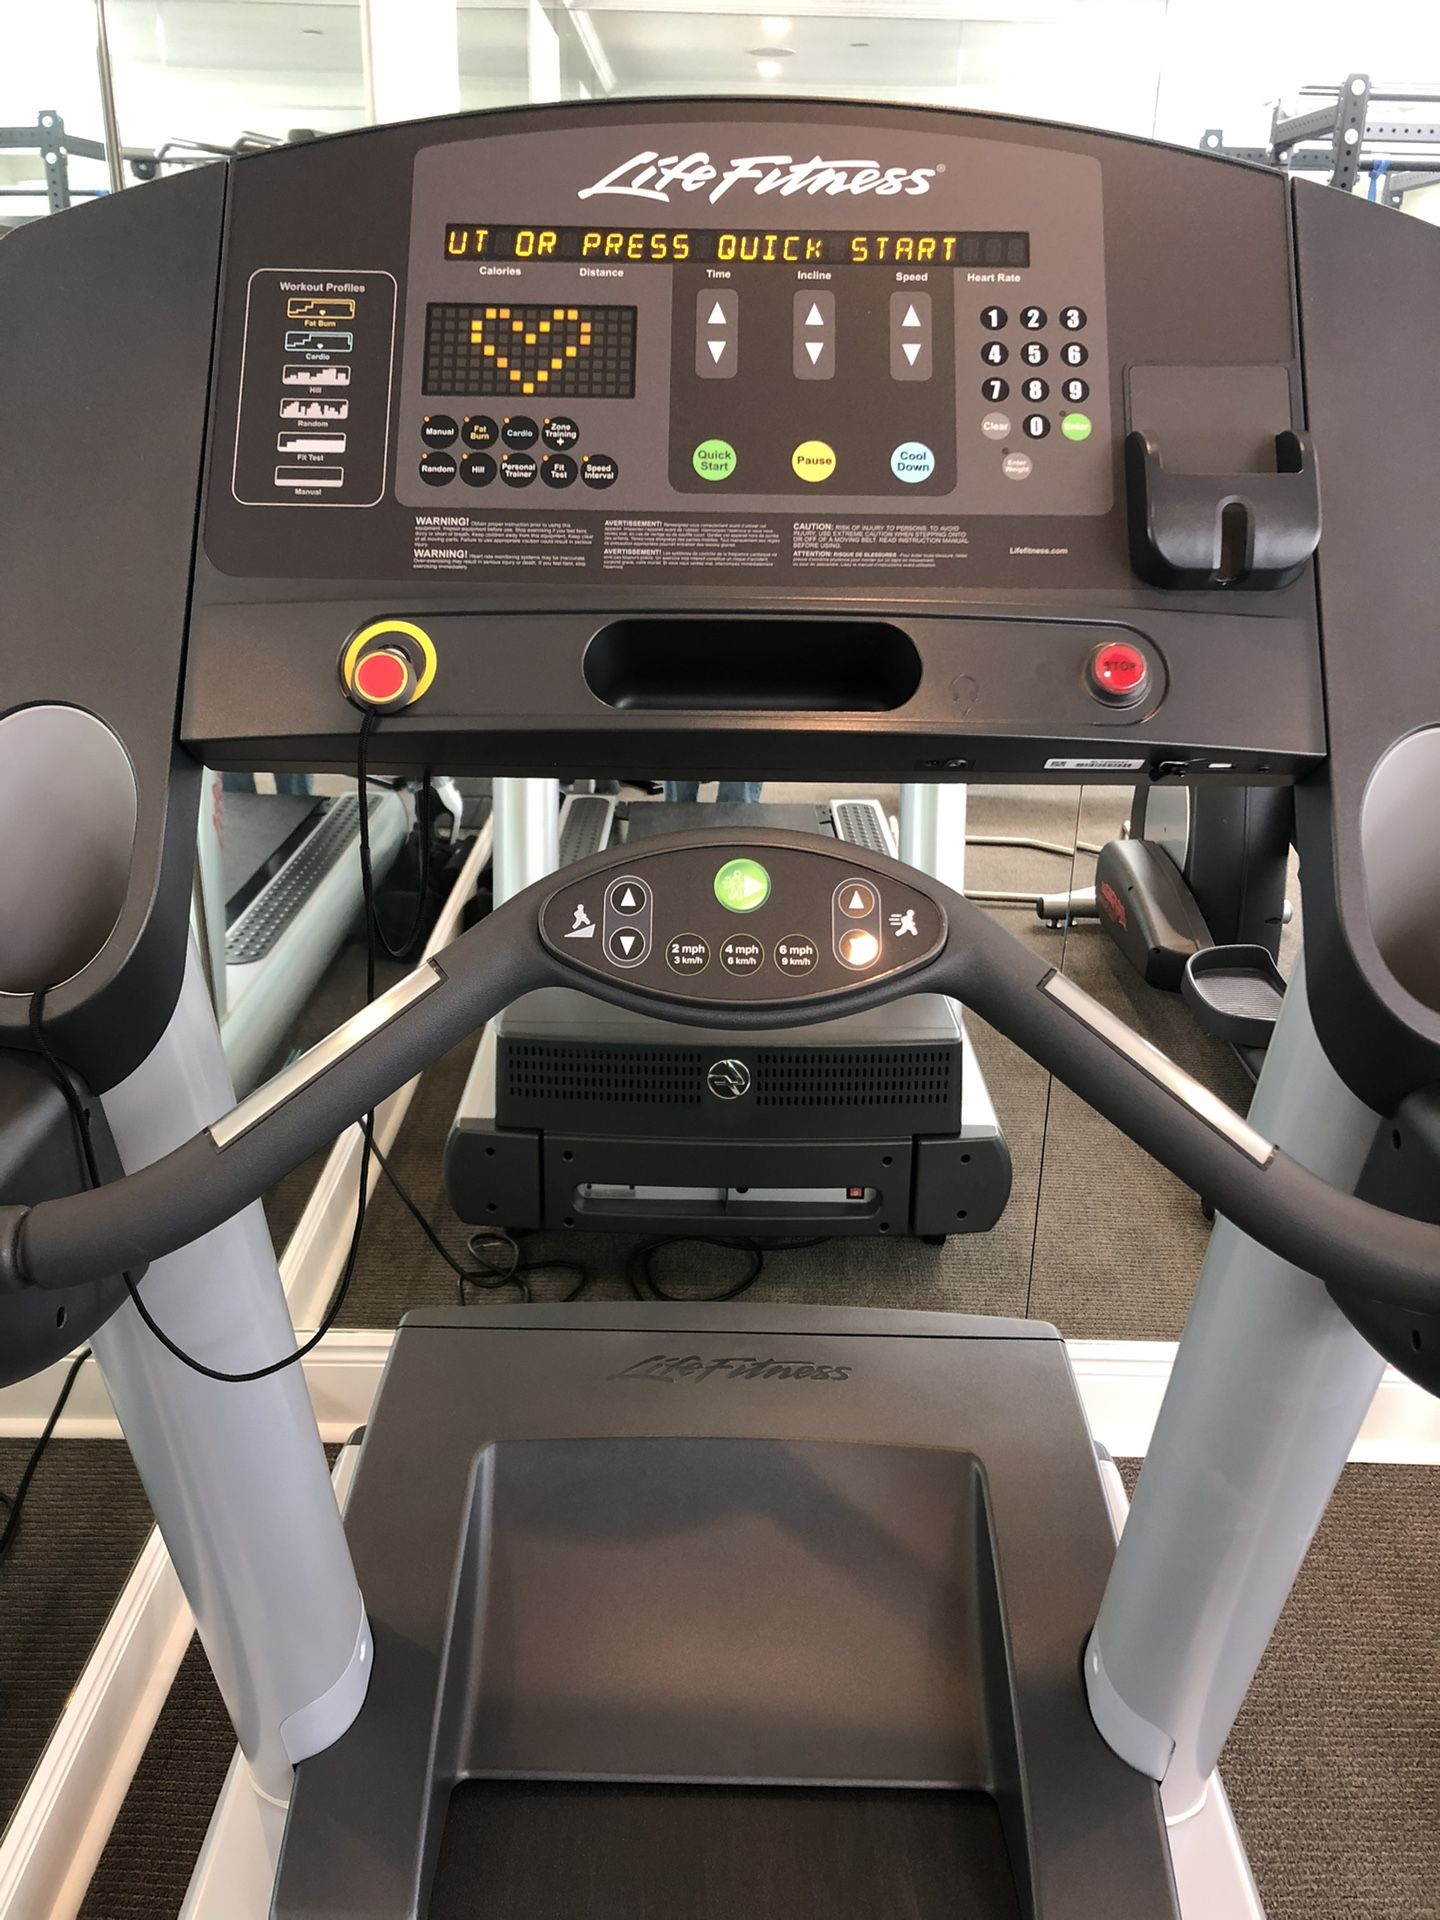 Life Fitness Club Series Treadmill 